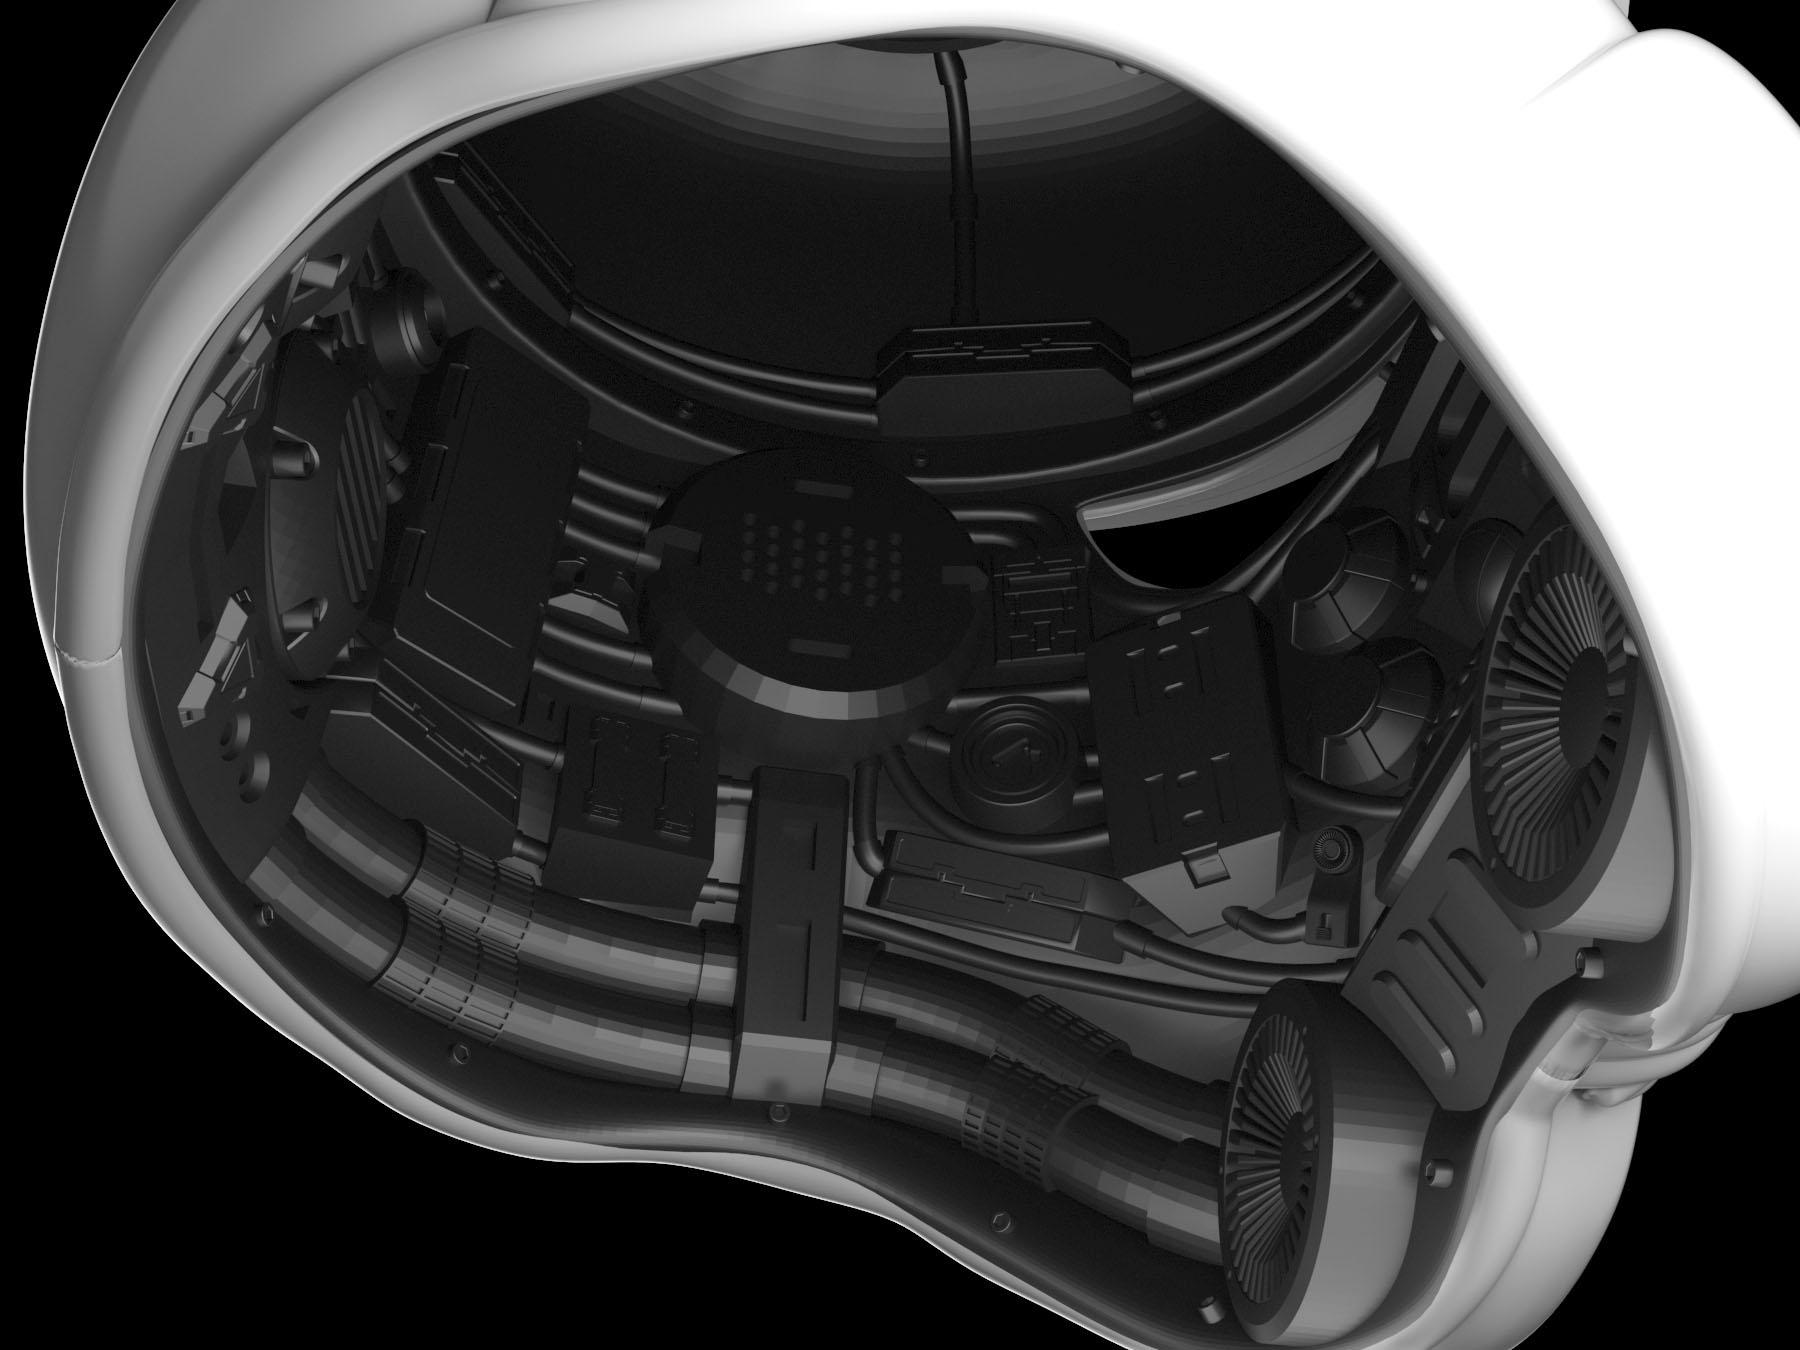 StormTrooper Helmet With Interior Details 3d model